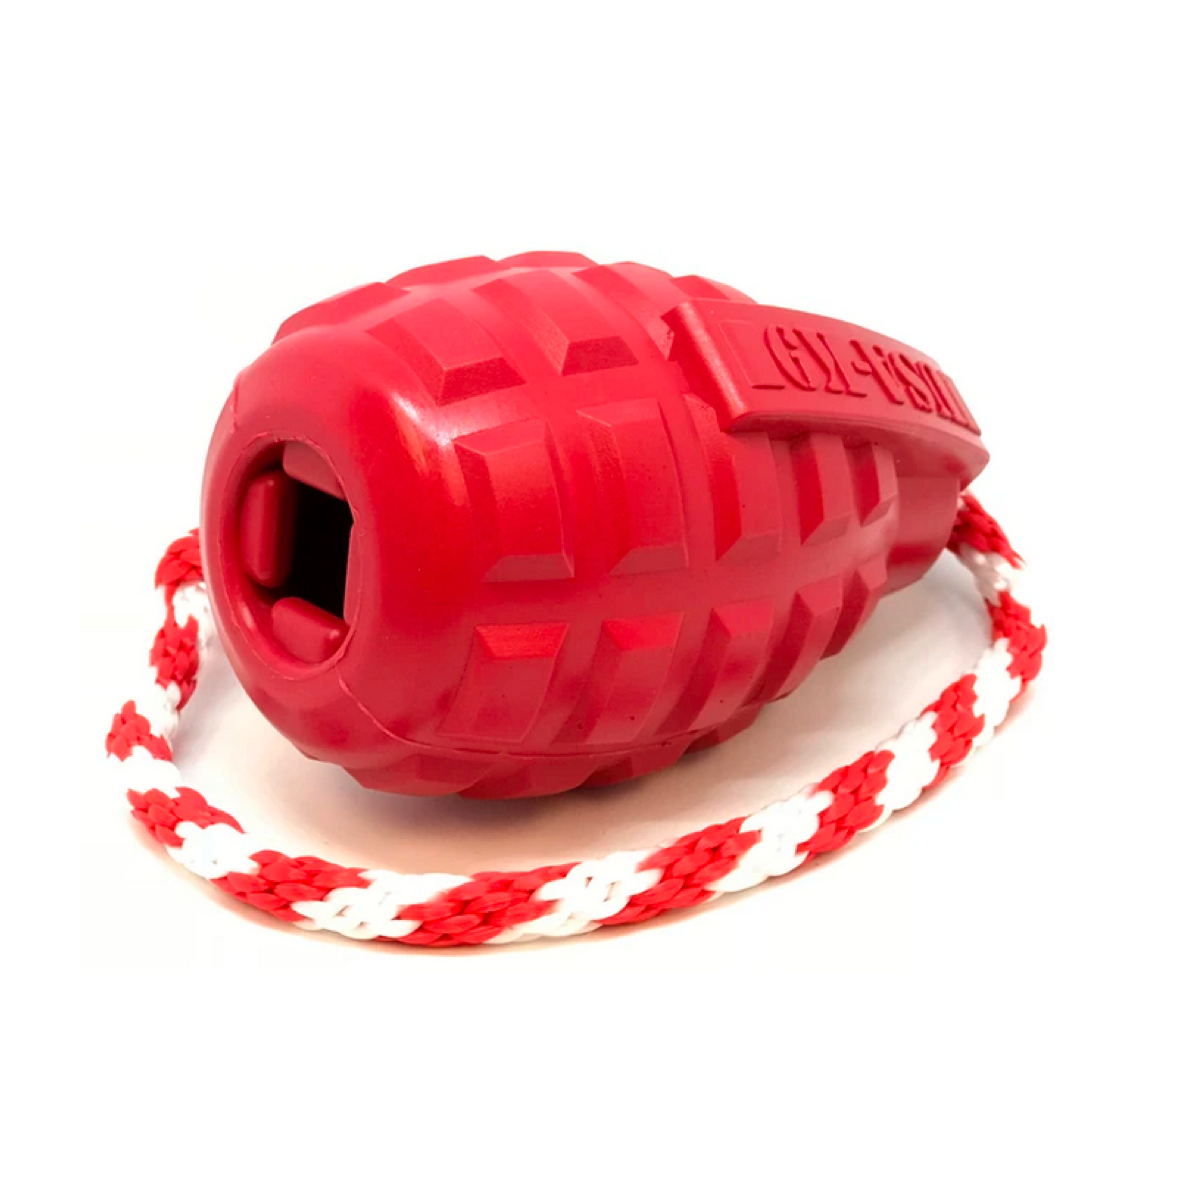 ROVER PET PRODUCTS - K9 Grenade Reward Toy